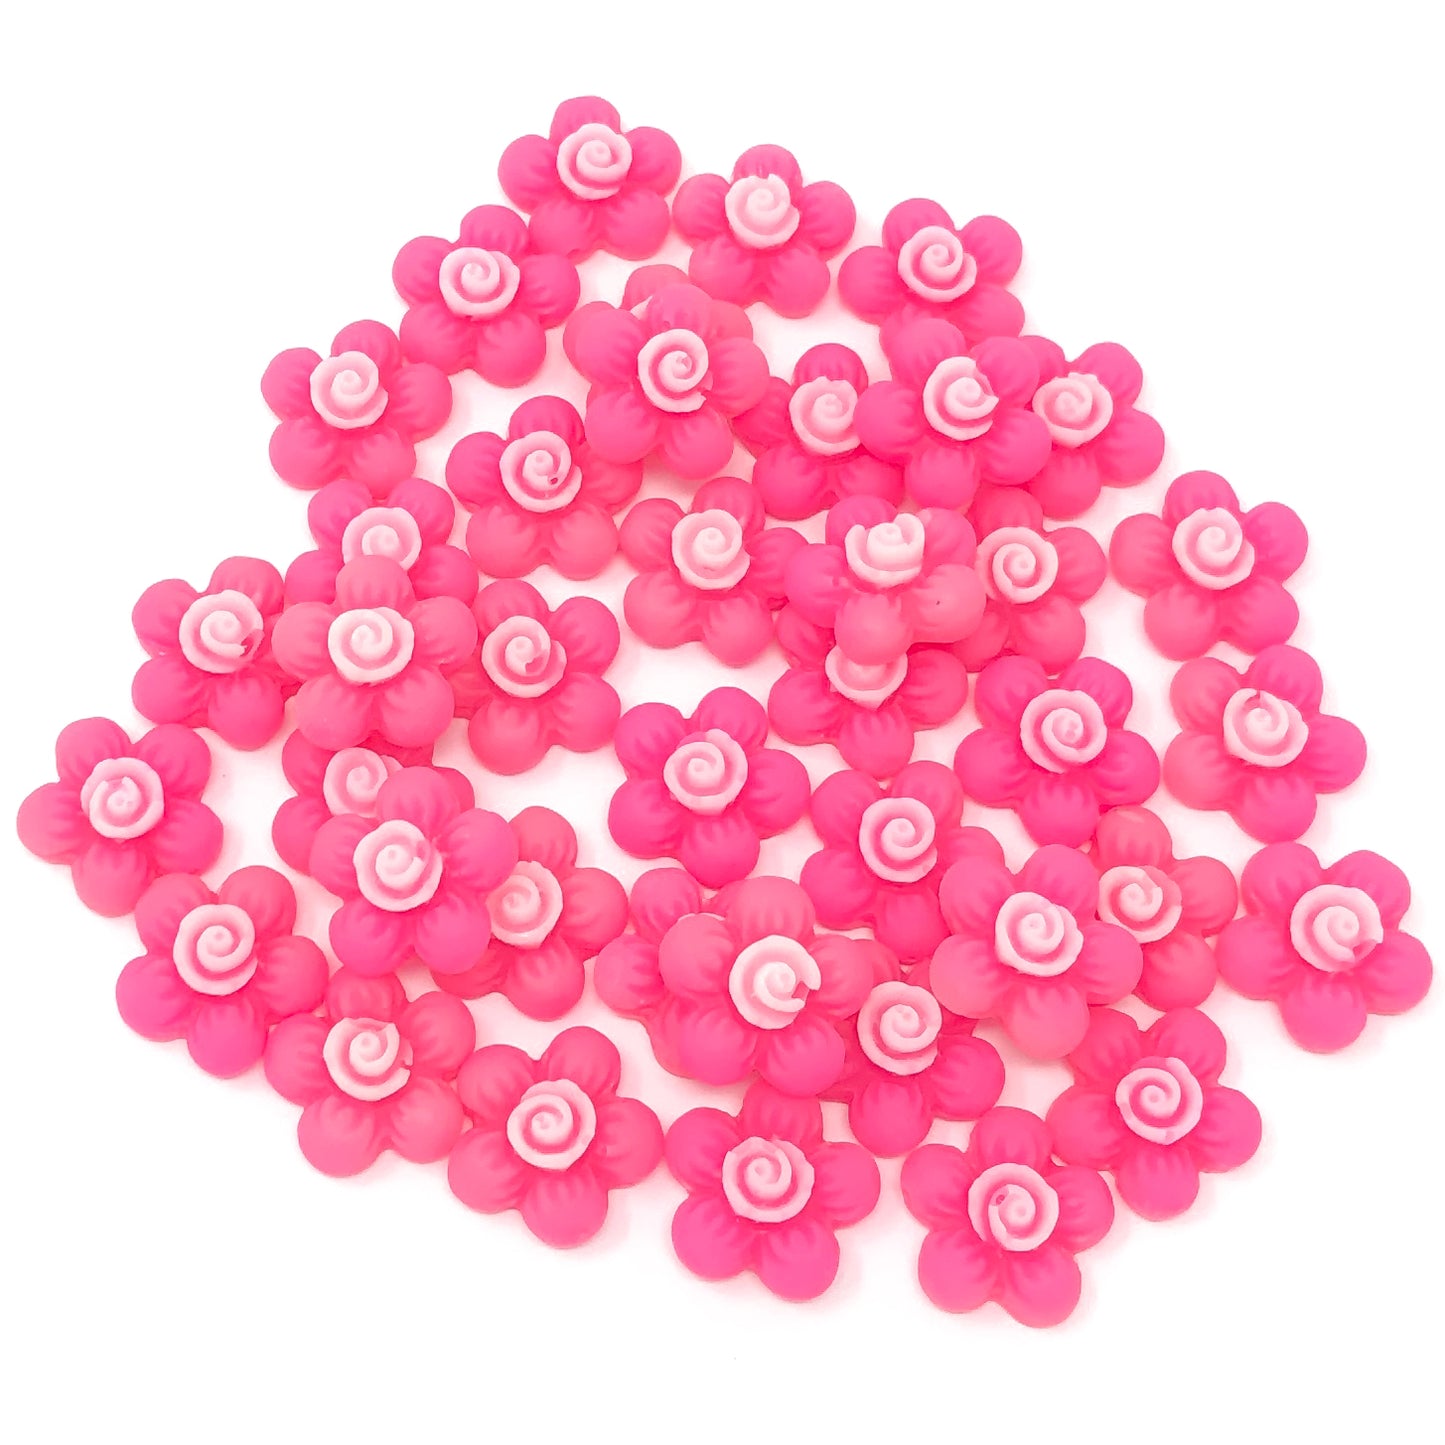 Pink 13mm Soft Feel Resin Flower Flatbacks - Pack of 40